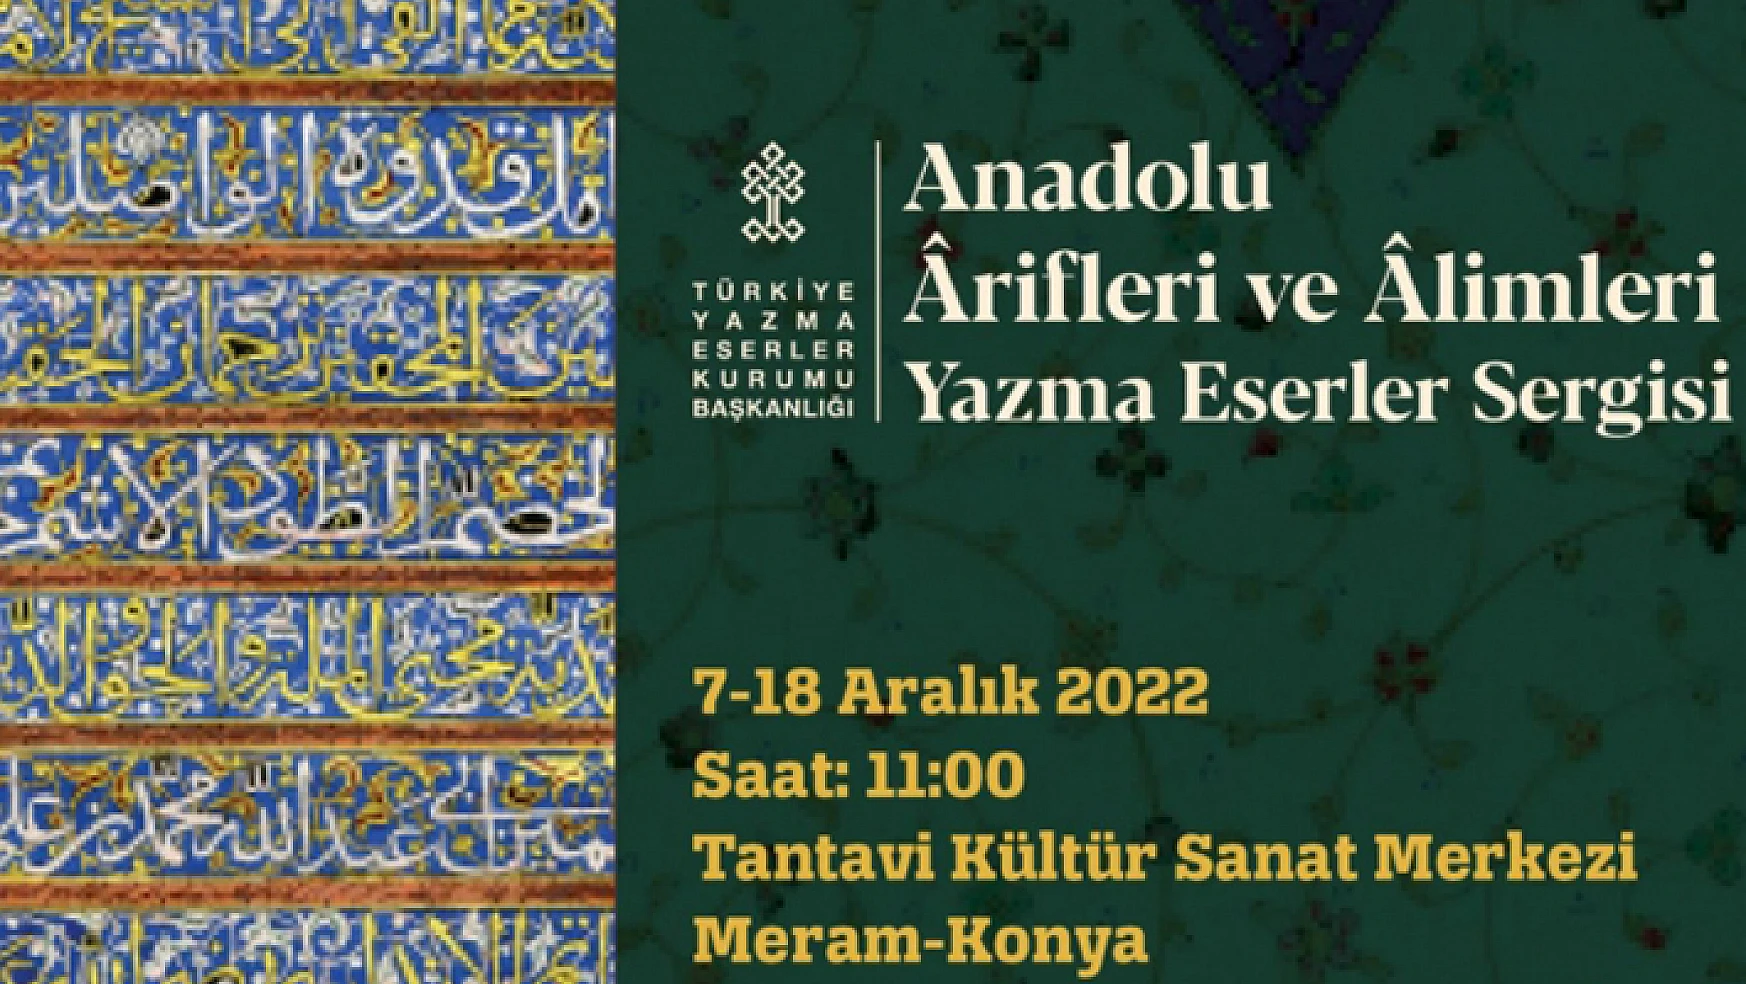 Konya'da ilk defa düzenlenecek olan yazma eser sergisi 'Anadolu Ârifleri ve Âlimleri' temasıyla açılıyor